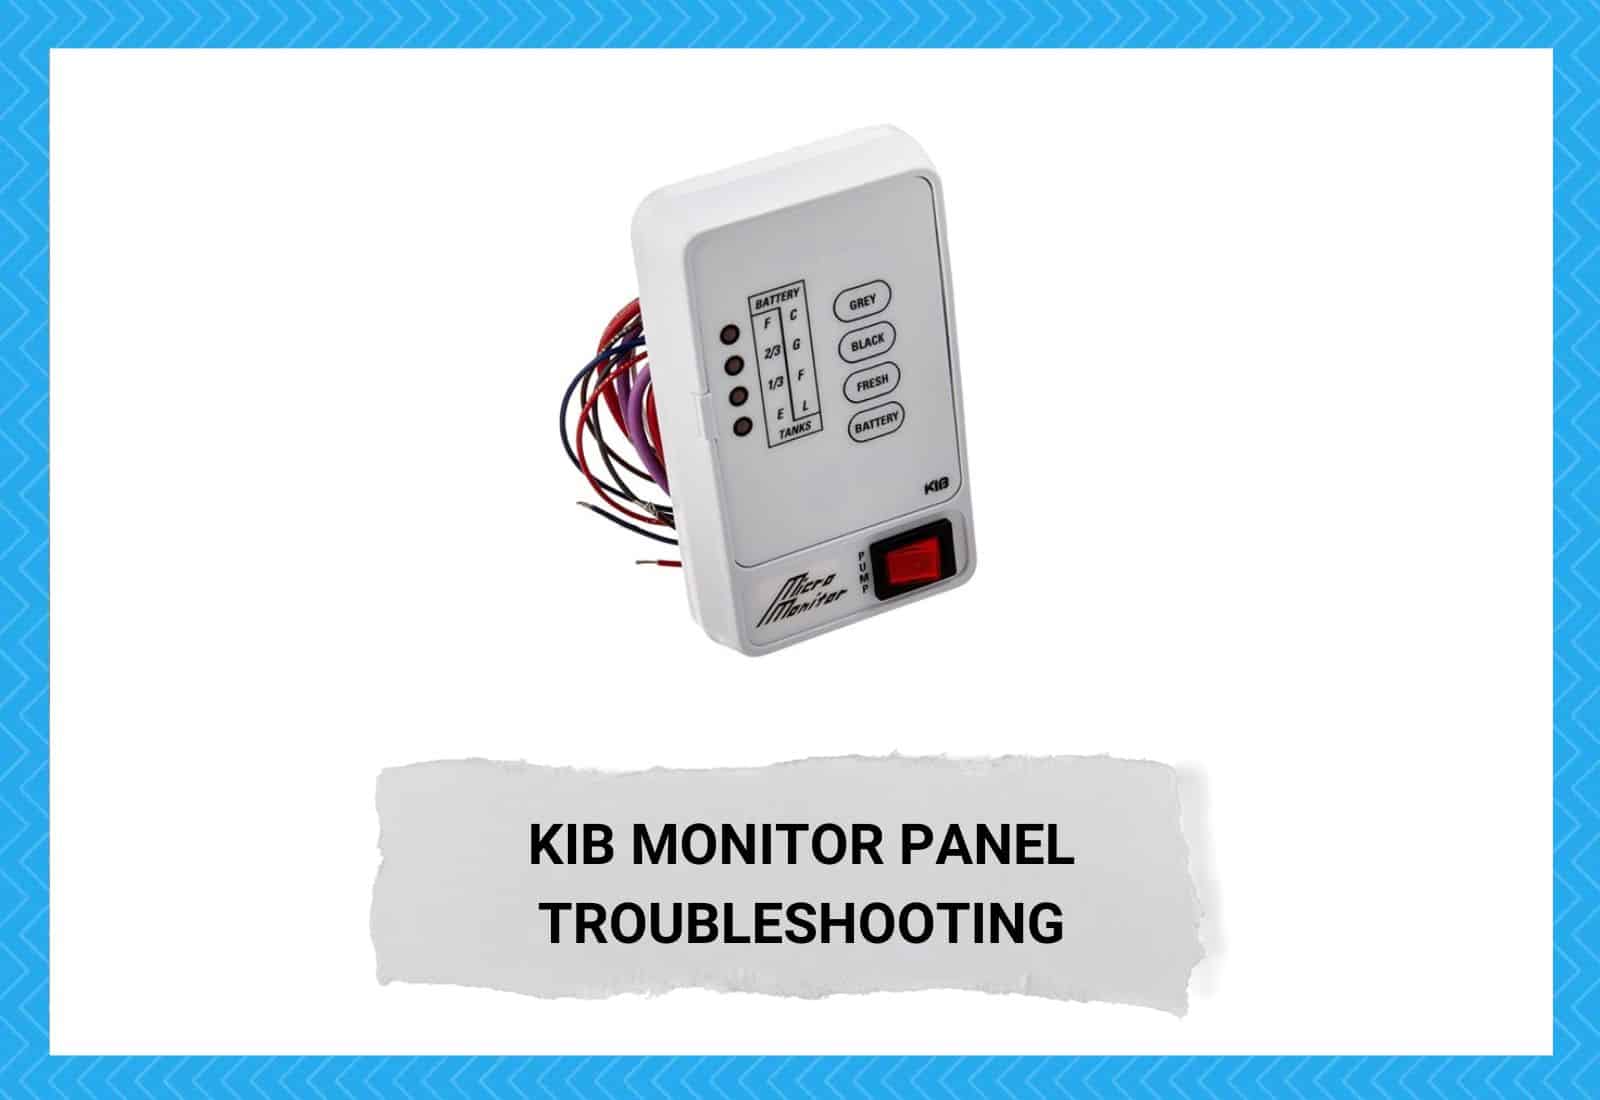 KIB Monitor Panel Troubleshooting